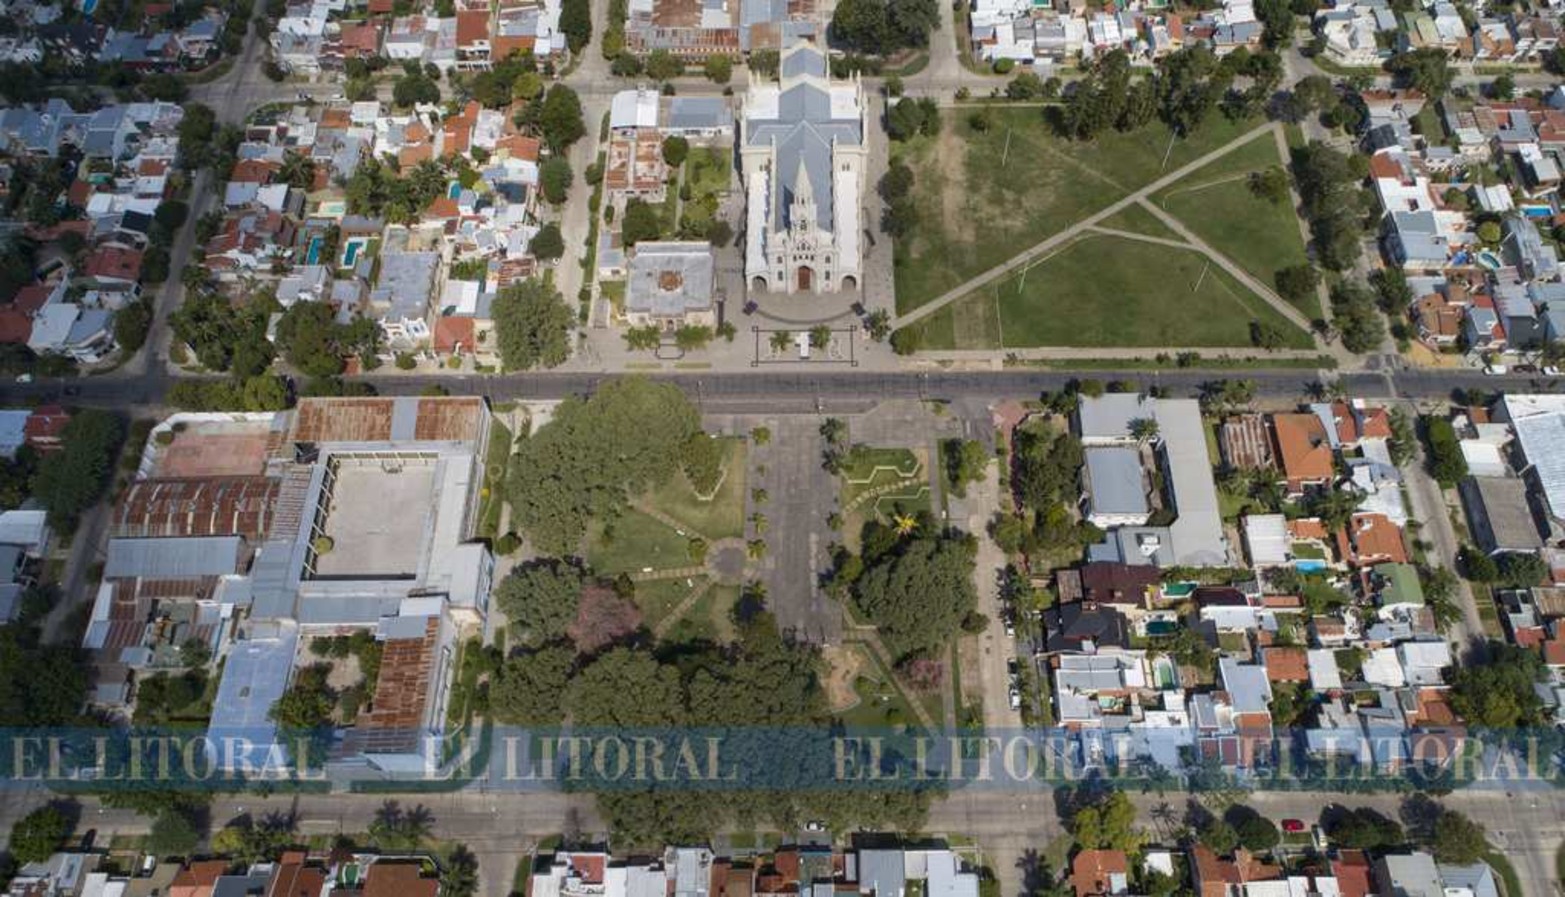 La plaza de la basílica de Guadalupe y su entorno natural.